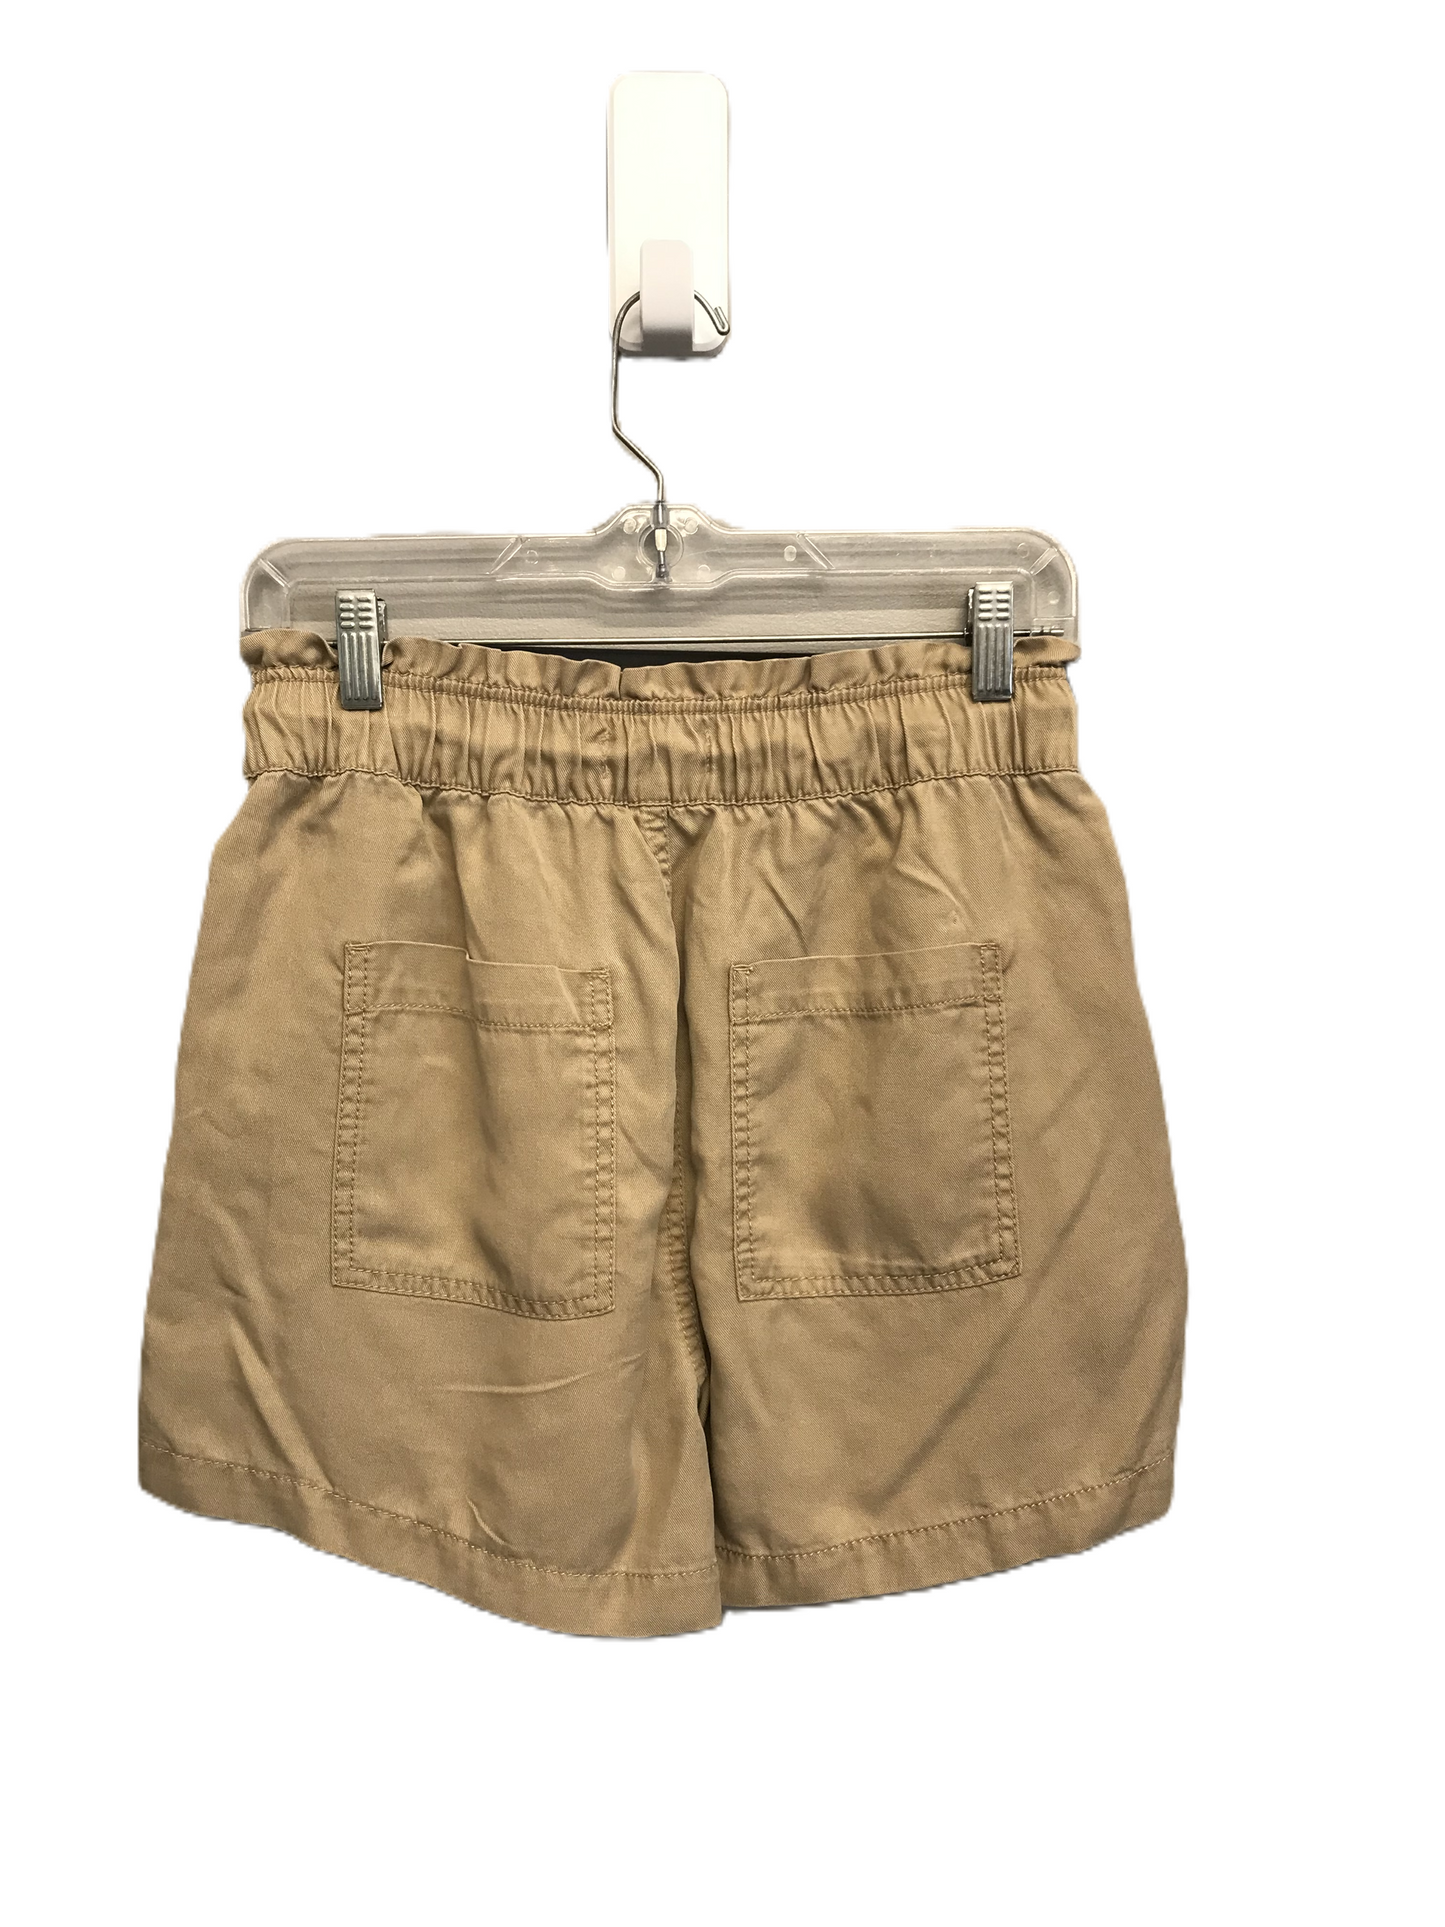 Tan Shorts By Loft, Size: 2